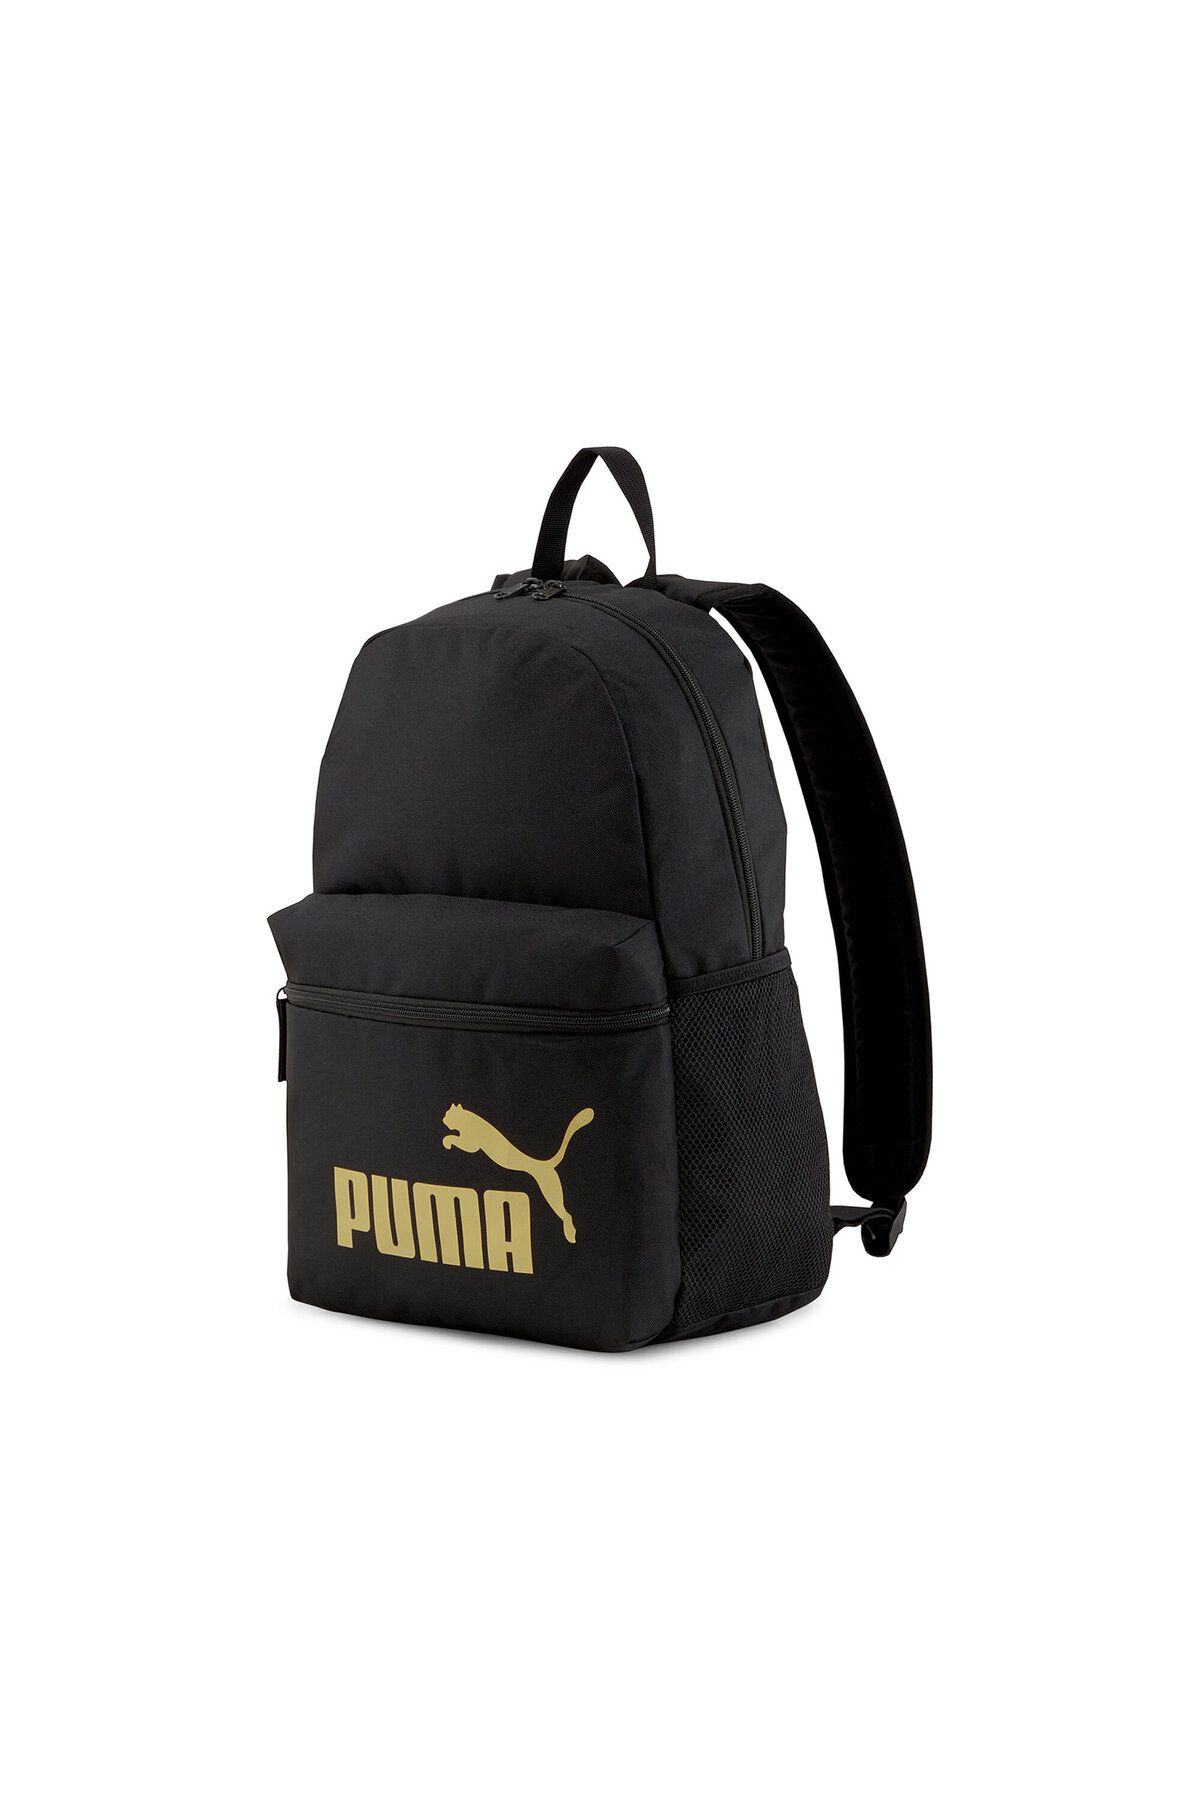 Puma Backpack Günlük ve Okulda Kullanıma Uygun Sırt Çantası Renkli